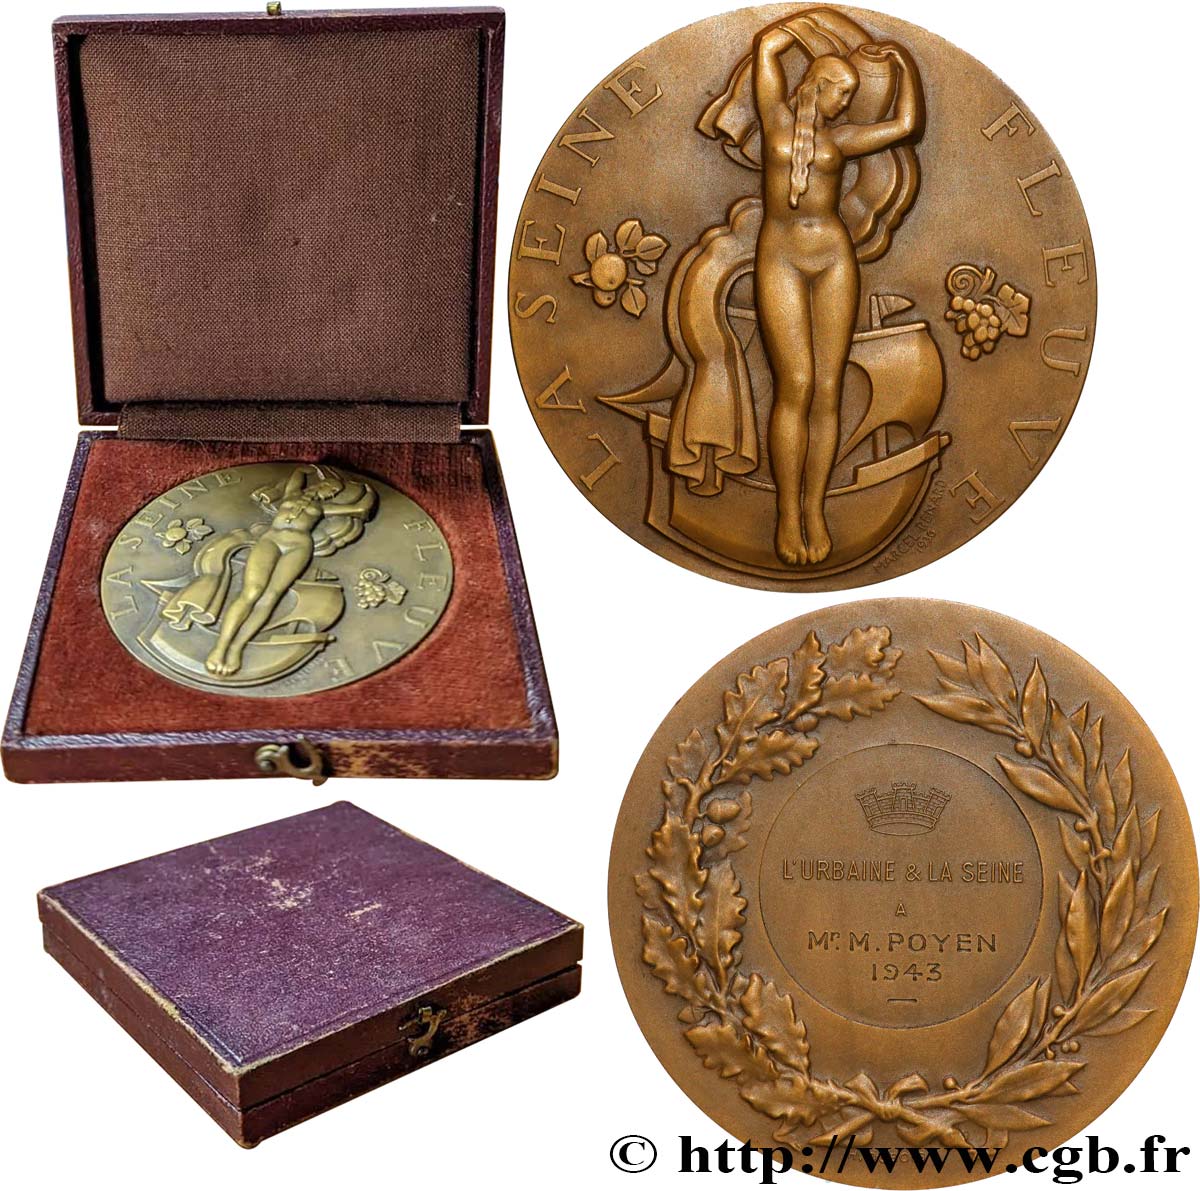 ETAT FRANÇAIS Médaille, La Seine Fleuve, L’Urbaine et la Seine EBC